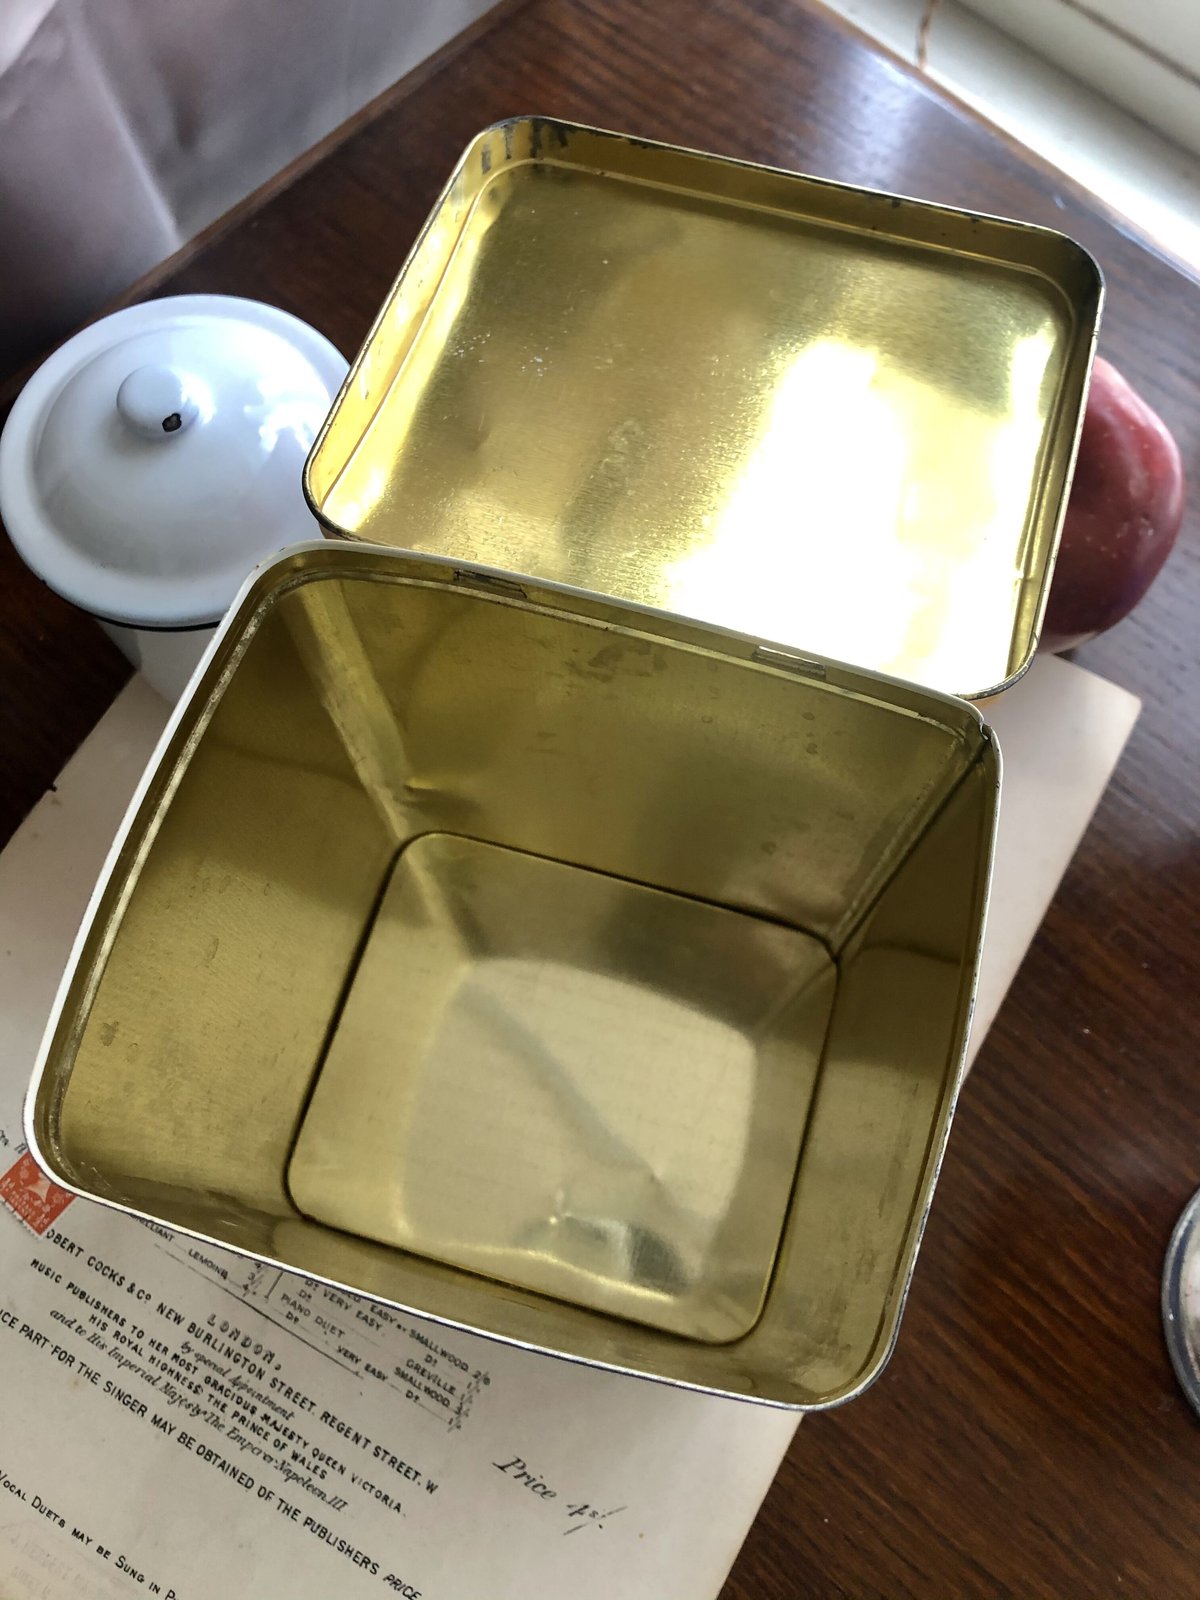 ○o-22/Homepride社フレッドくんの小麦粉缶 | PISKEY -イギリスの